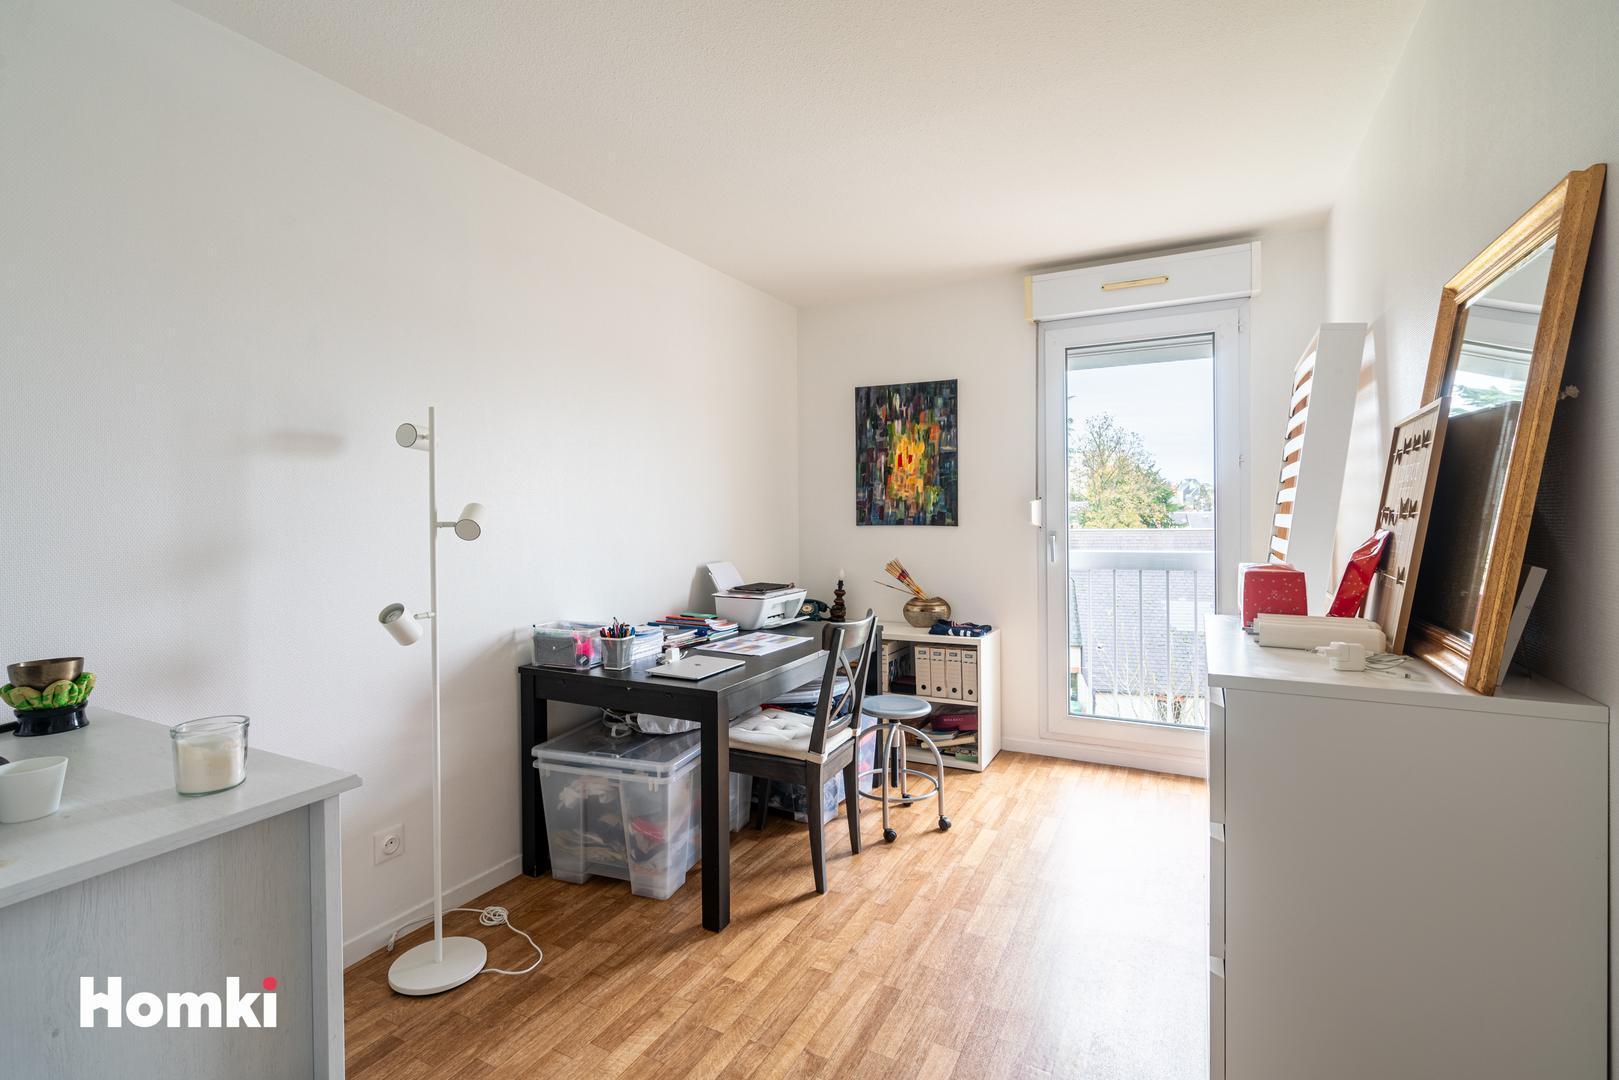 Homki - Vente Appartement  de 91.0 m² à Orléans 45100